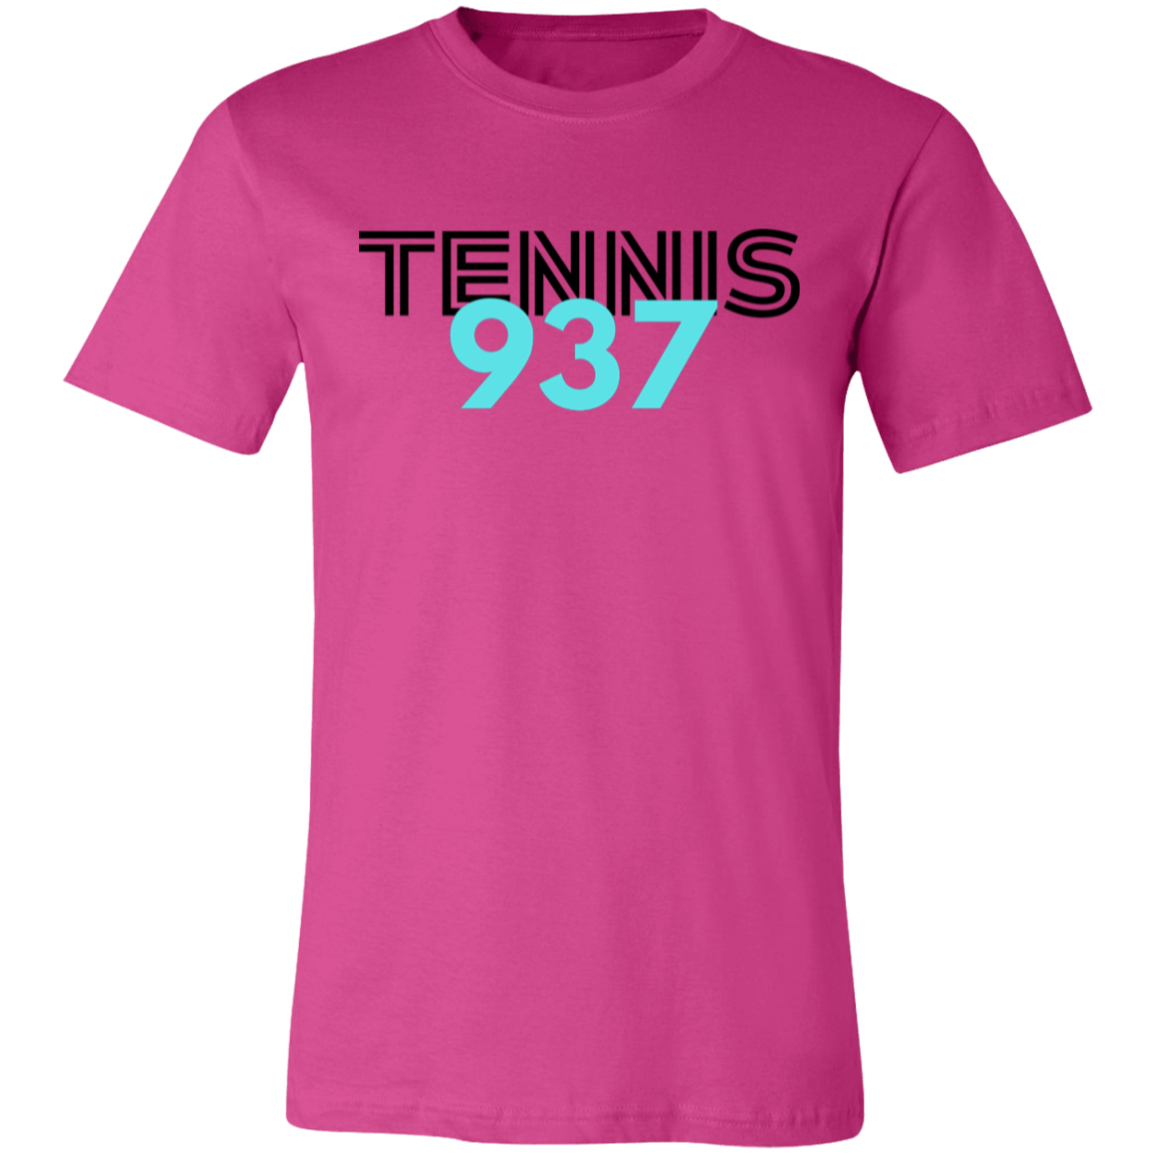 Tennis937 Unisex Jersey Tee